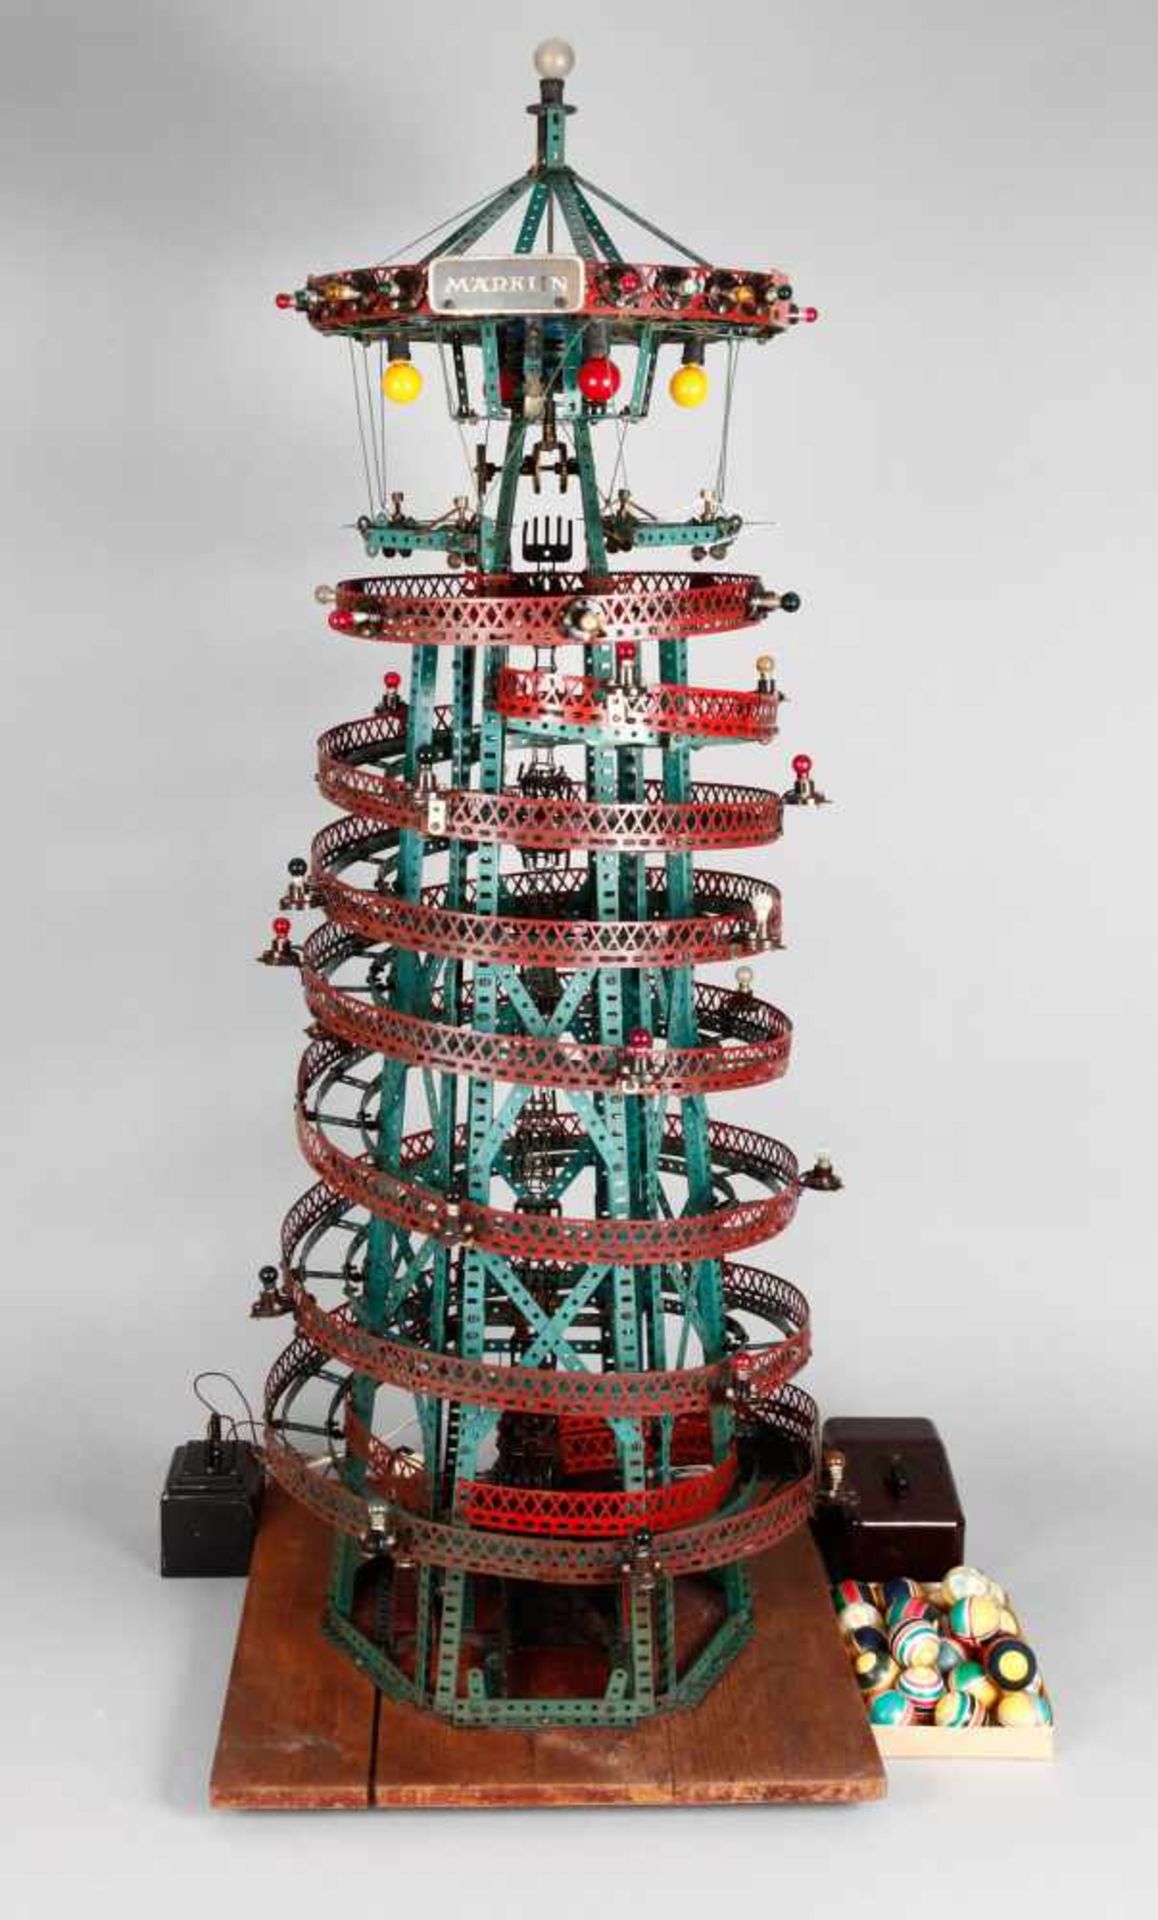 Märklin großer Ballturm um 1930, als Schaufenstermodell für Spielzeuggeschäfte von der Firma Märklin